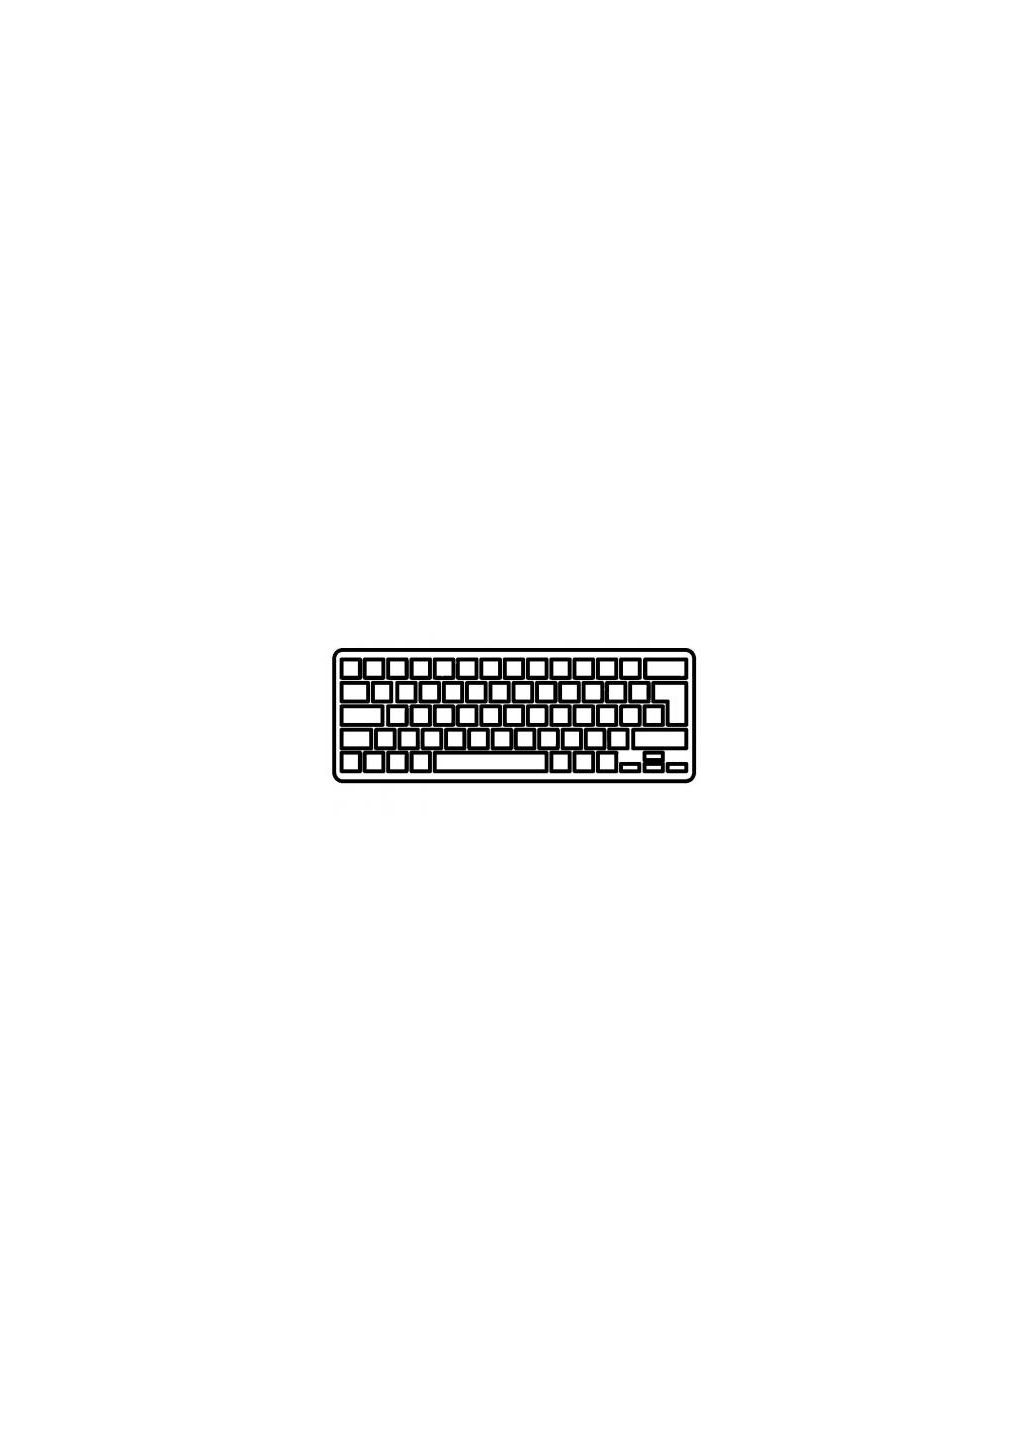 Клавиатура для ноутбука XSlim X300/X320/X340/X400 белая UA (A43410) MSI x-slim x300/x320/x340/x400 белая ua (276708069)